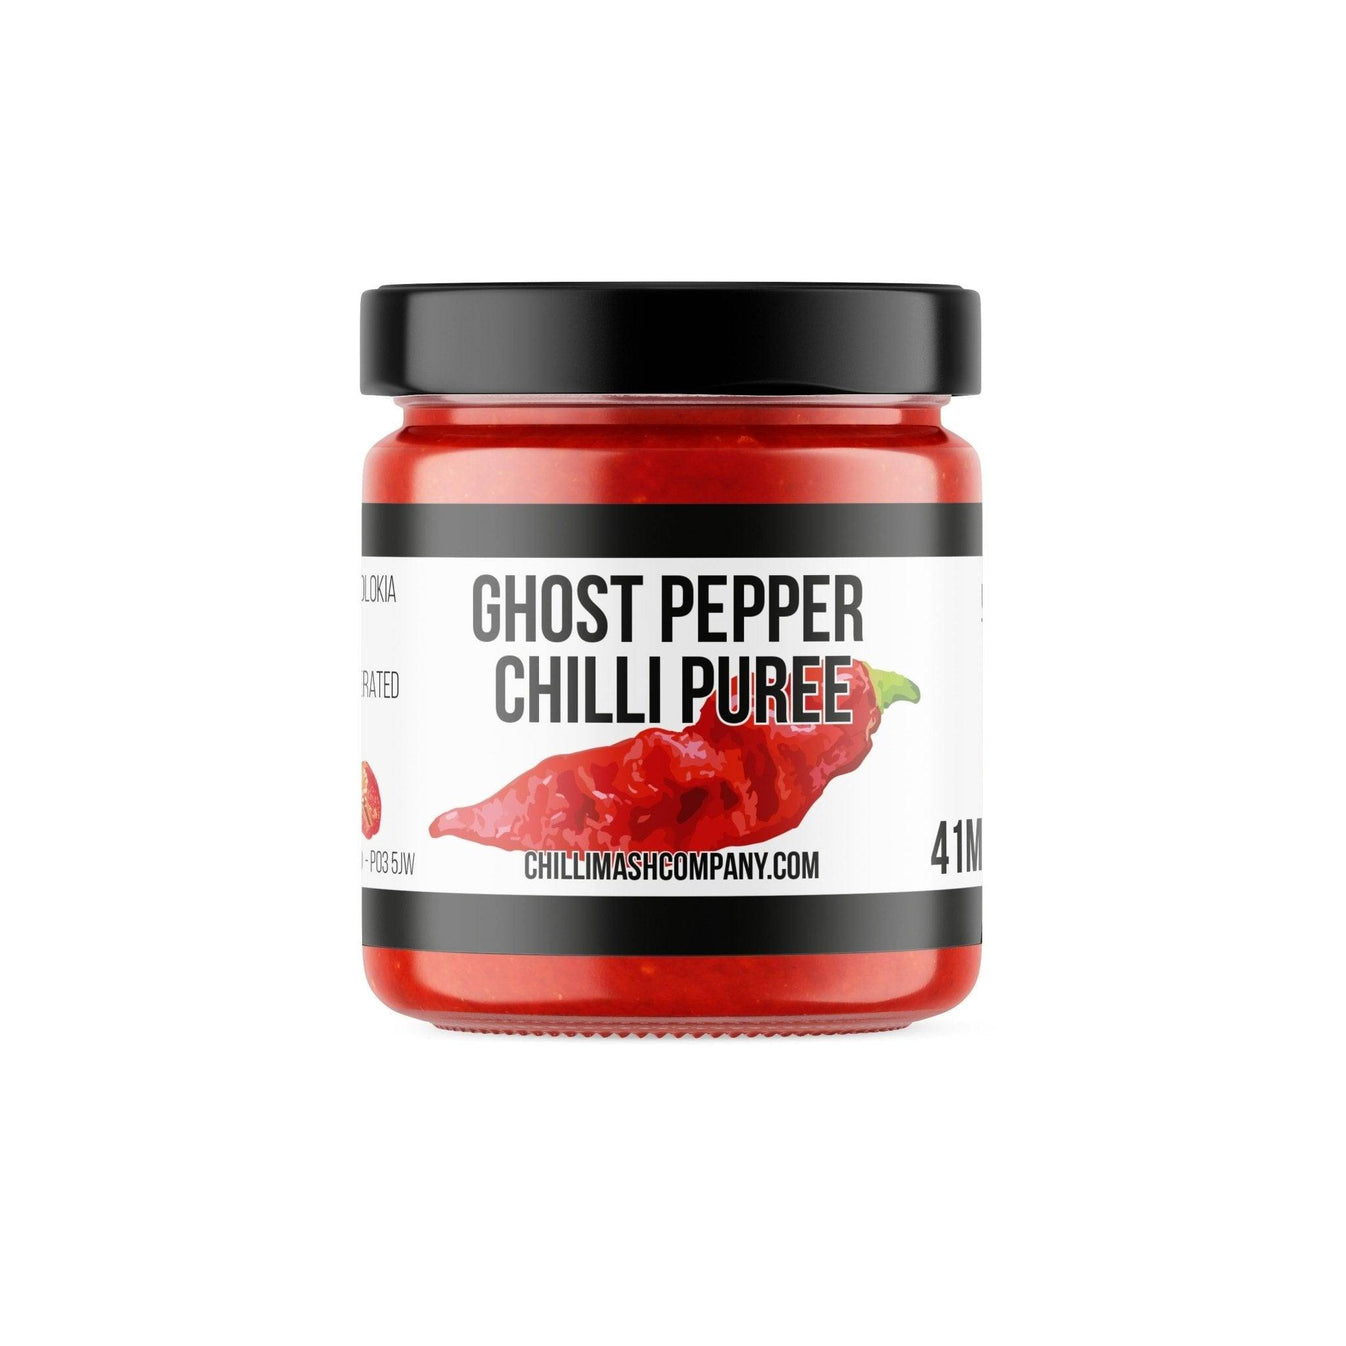 Ghost pepper chilli puree 41ml